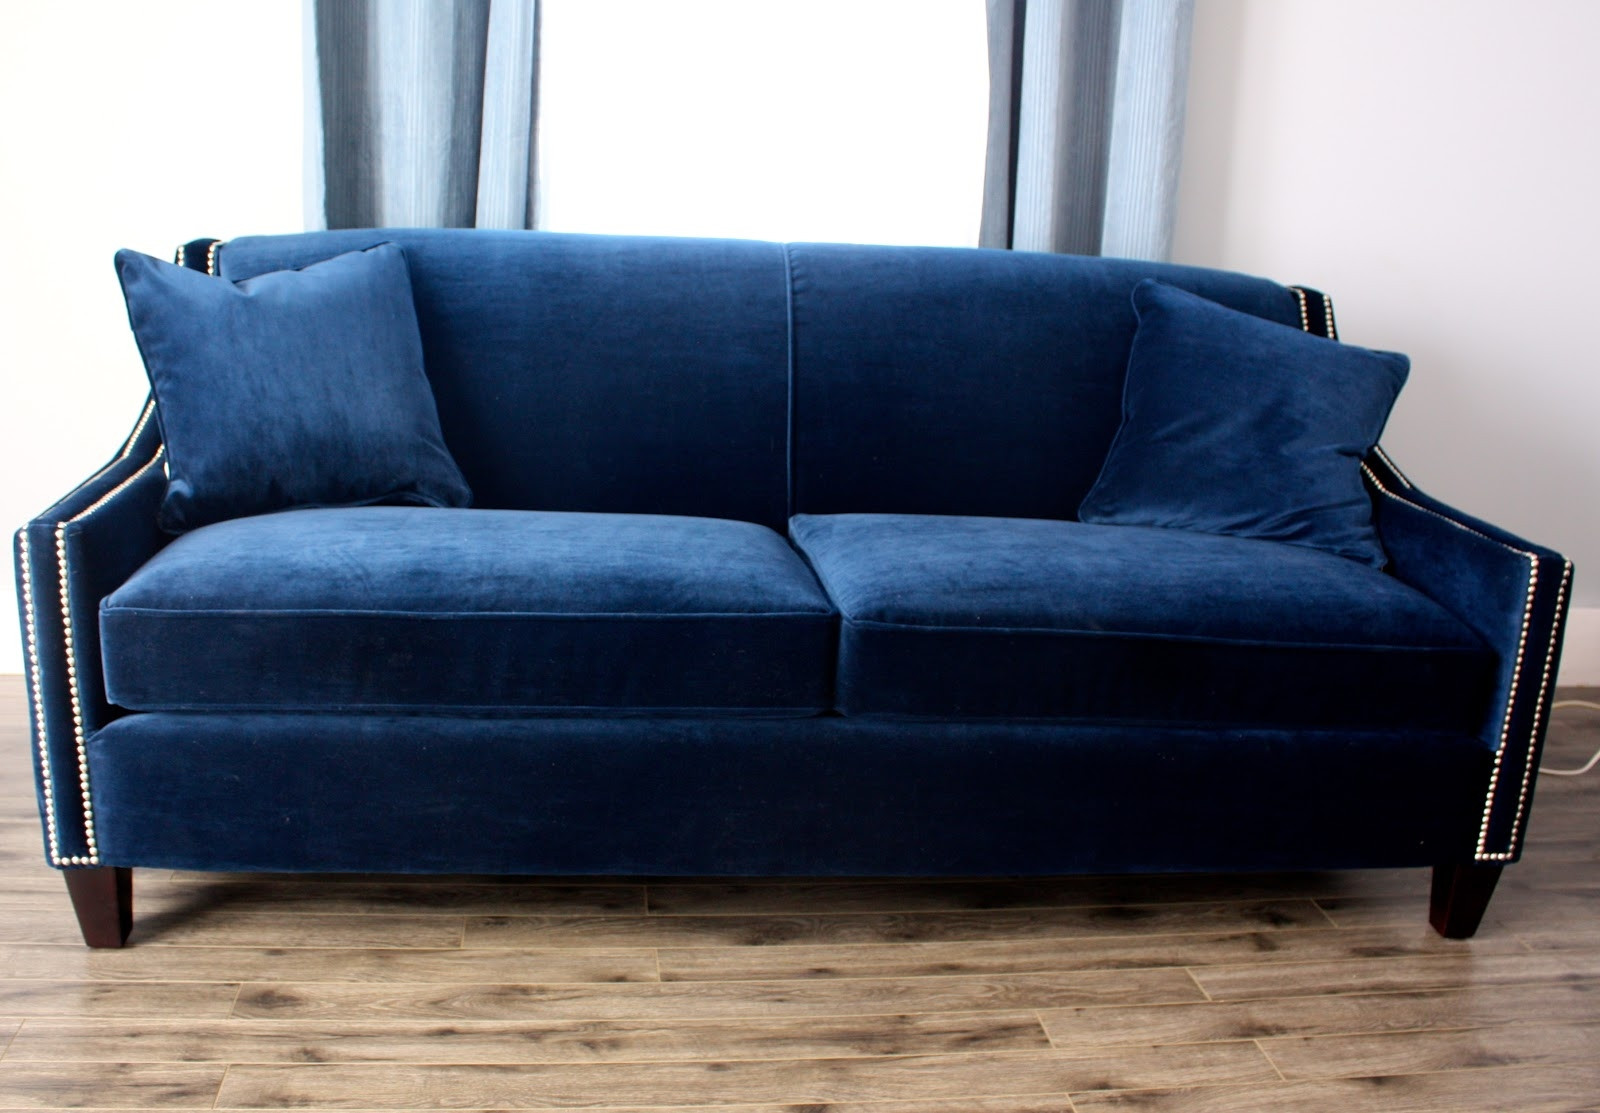 Best ideas about Velvet Sleeper Sofa
. Save or Pin Brilliant Blue Velvet Sleeper Sofa MediasUpload Now.